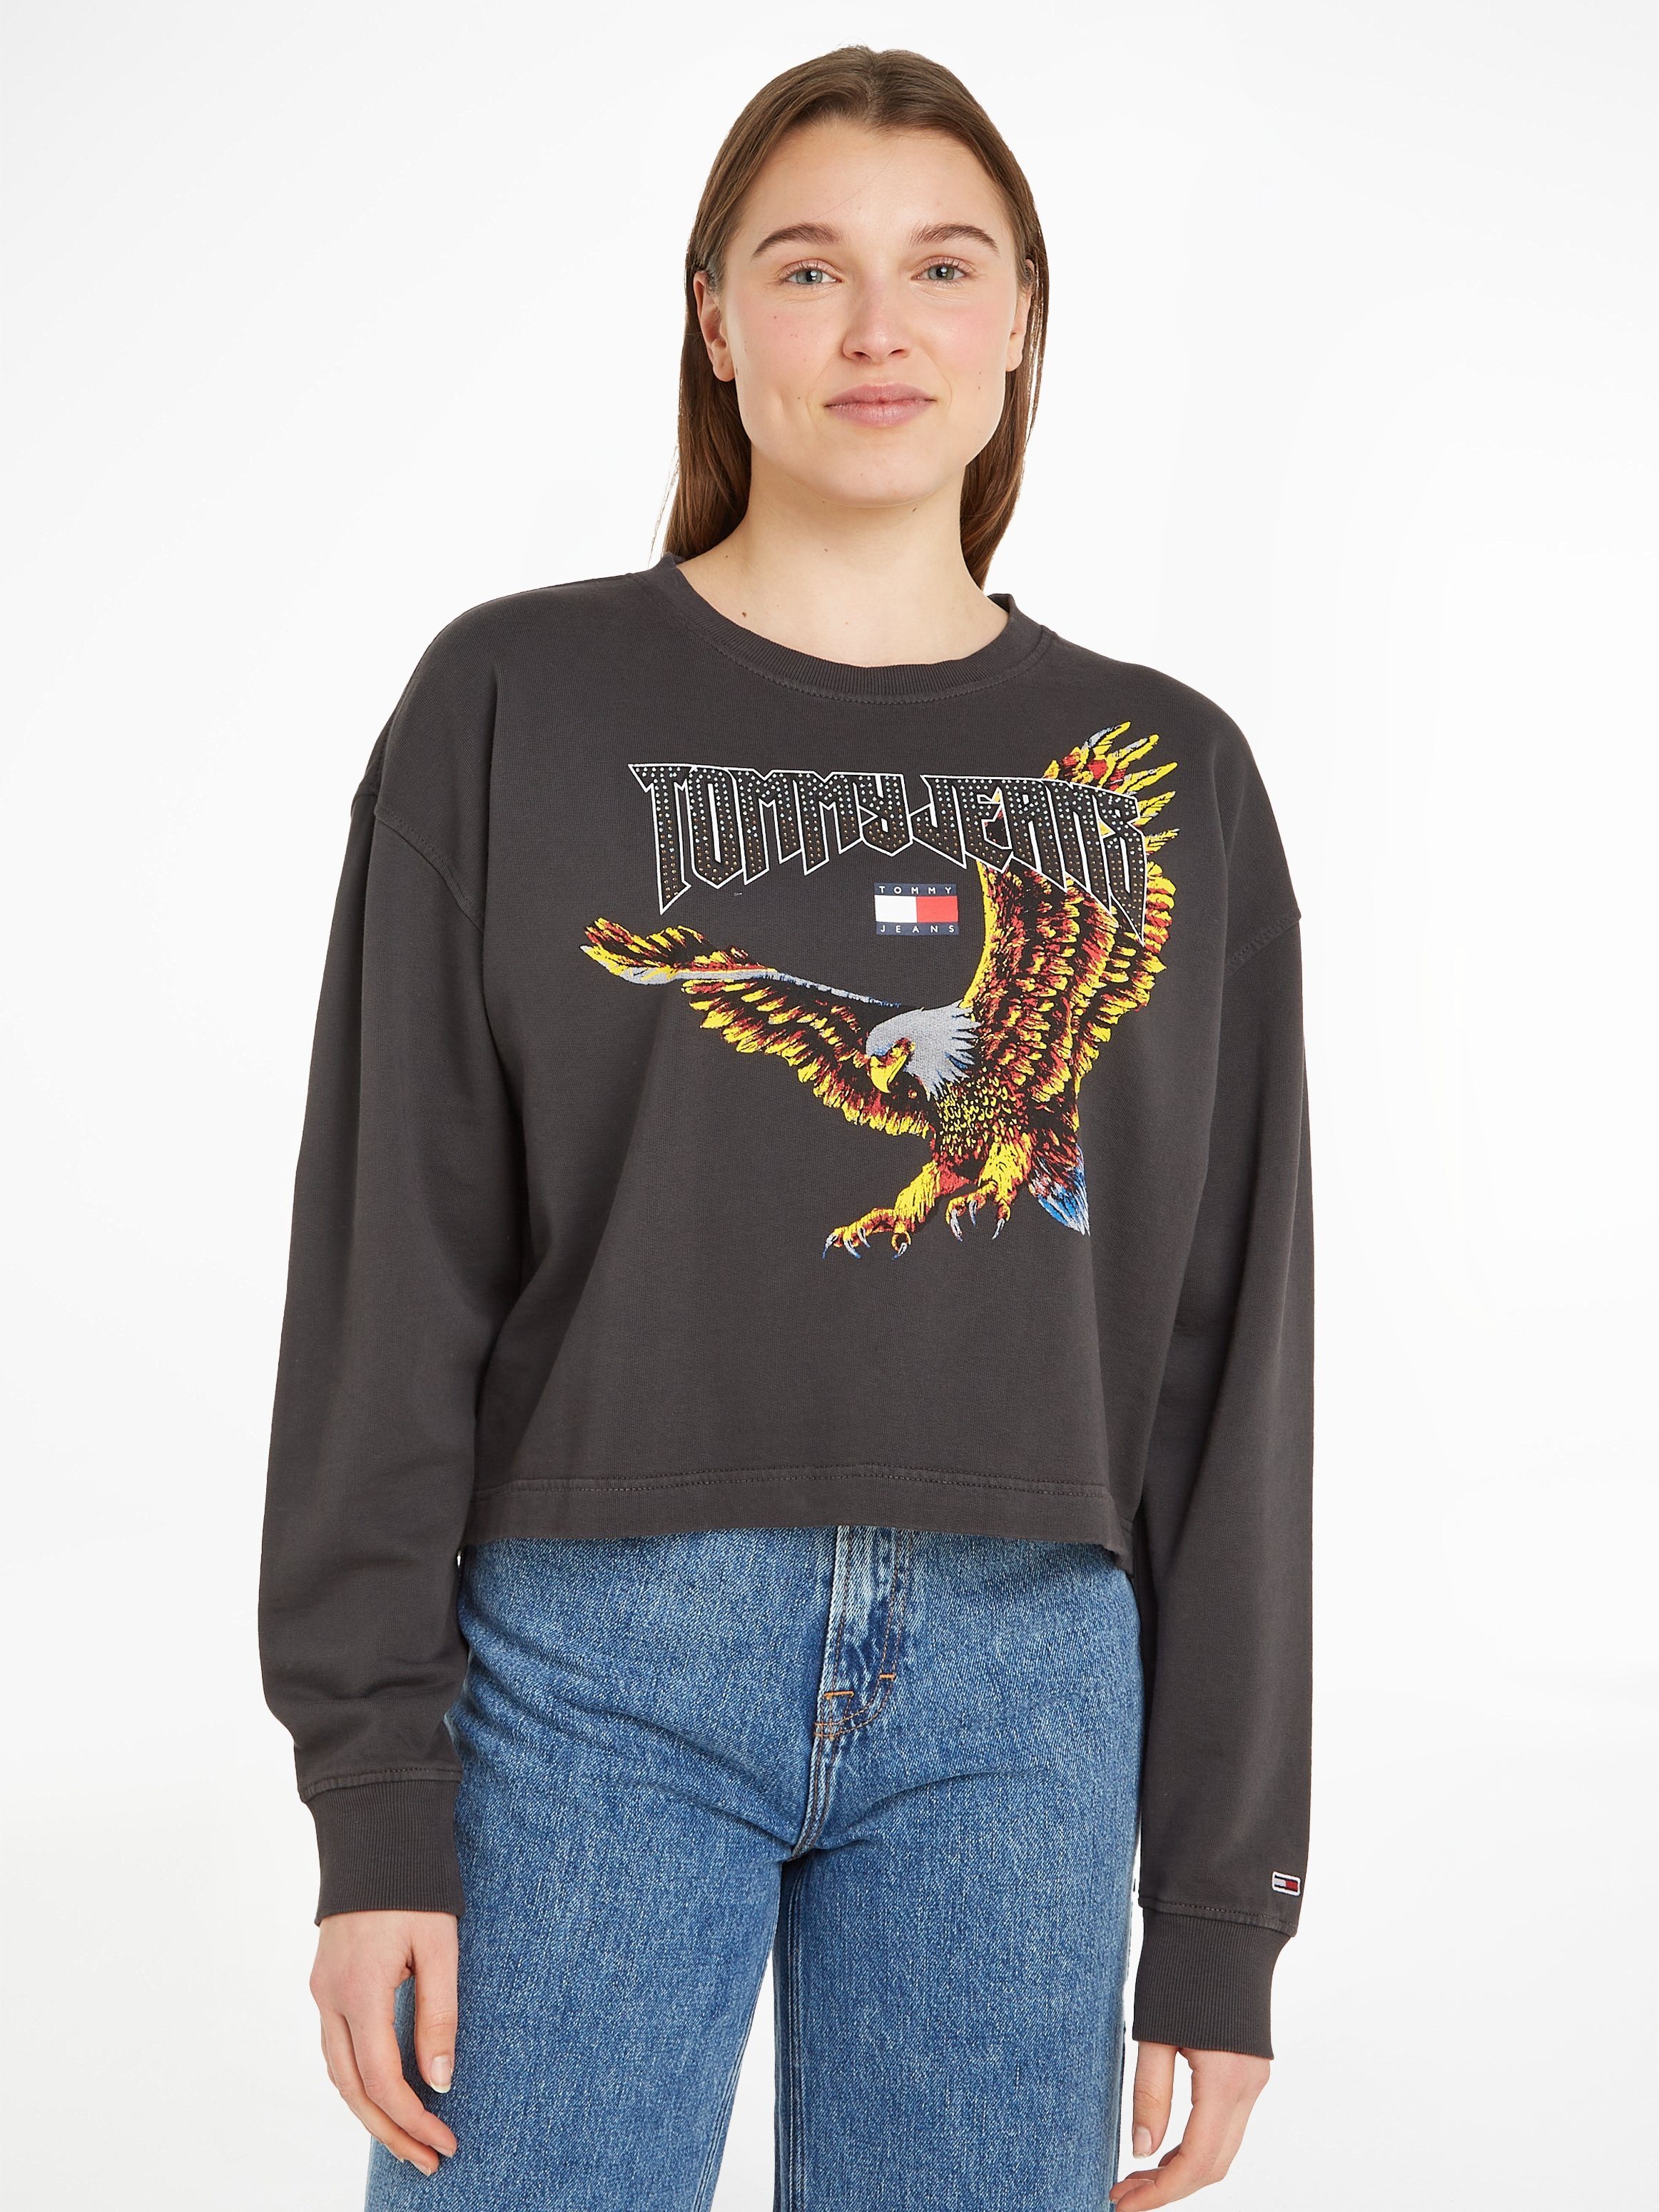 Tommy Jeans Sweatshirt TJW RLX CRP VINTAGE EAGLE CREW mit coolem Vintage Adler Print, used Sweatoptik